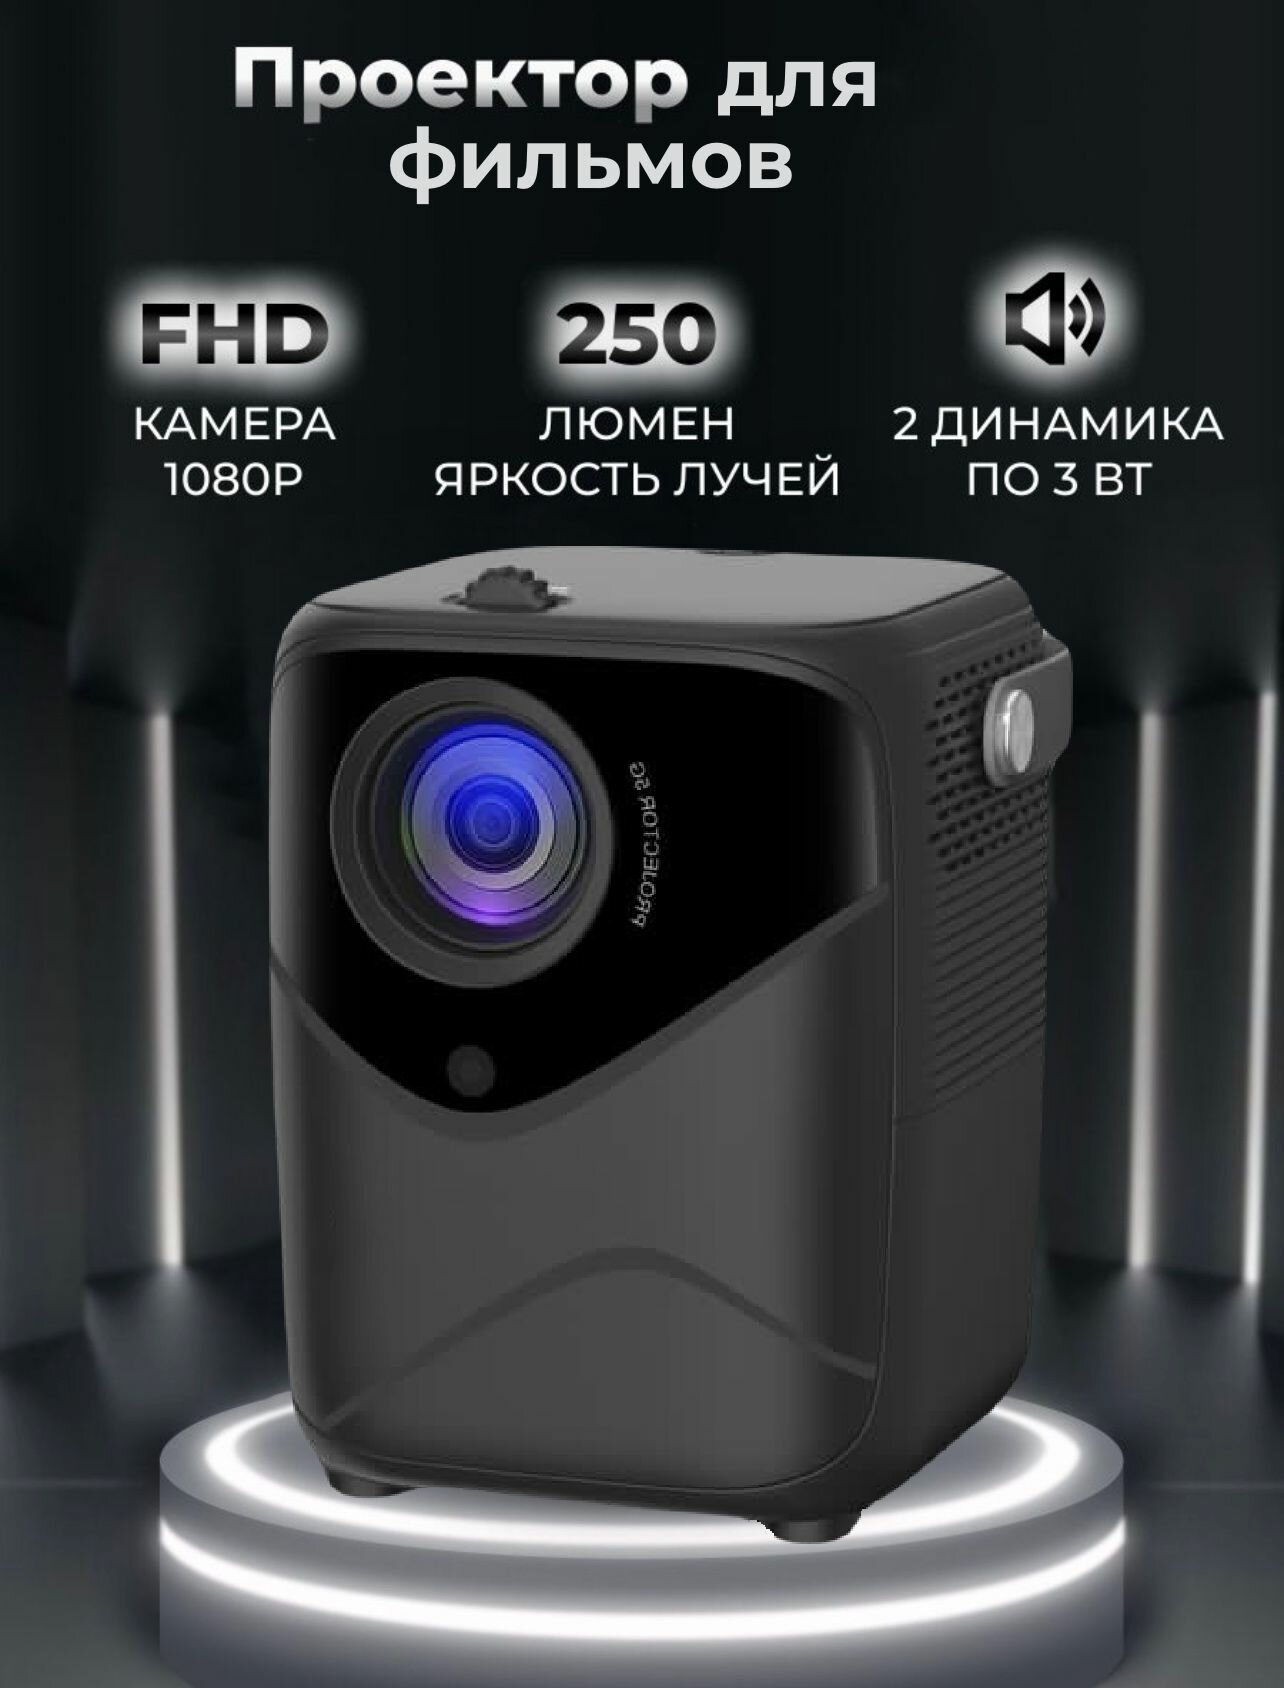 Проектор для фильмов мультимедийный: HDMI, Wi-Fi, AirPlay, Bluetooth, портативный мини проектор